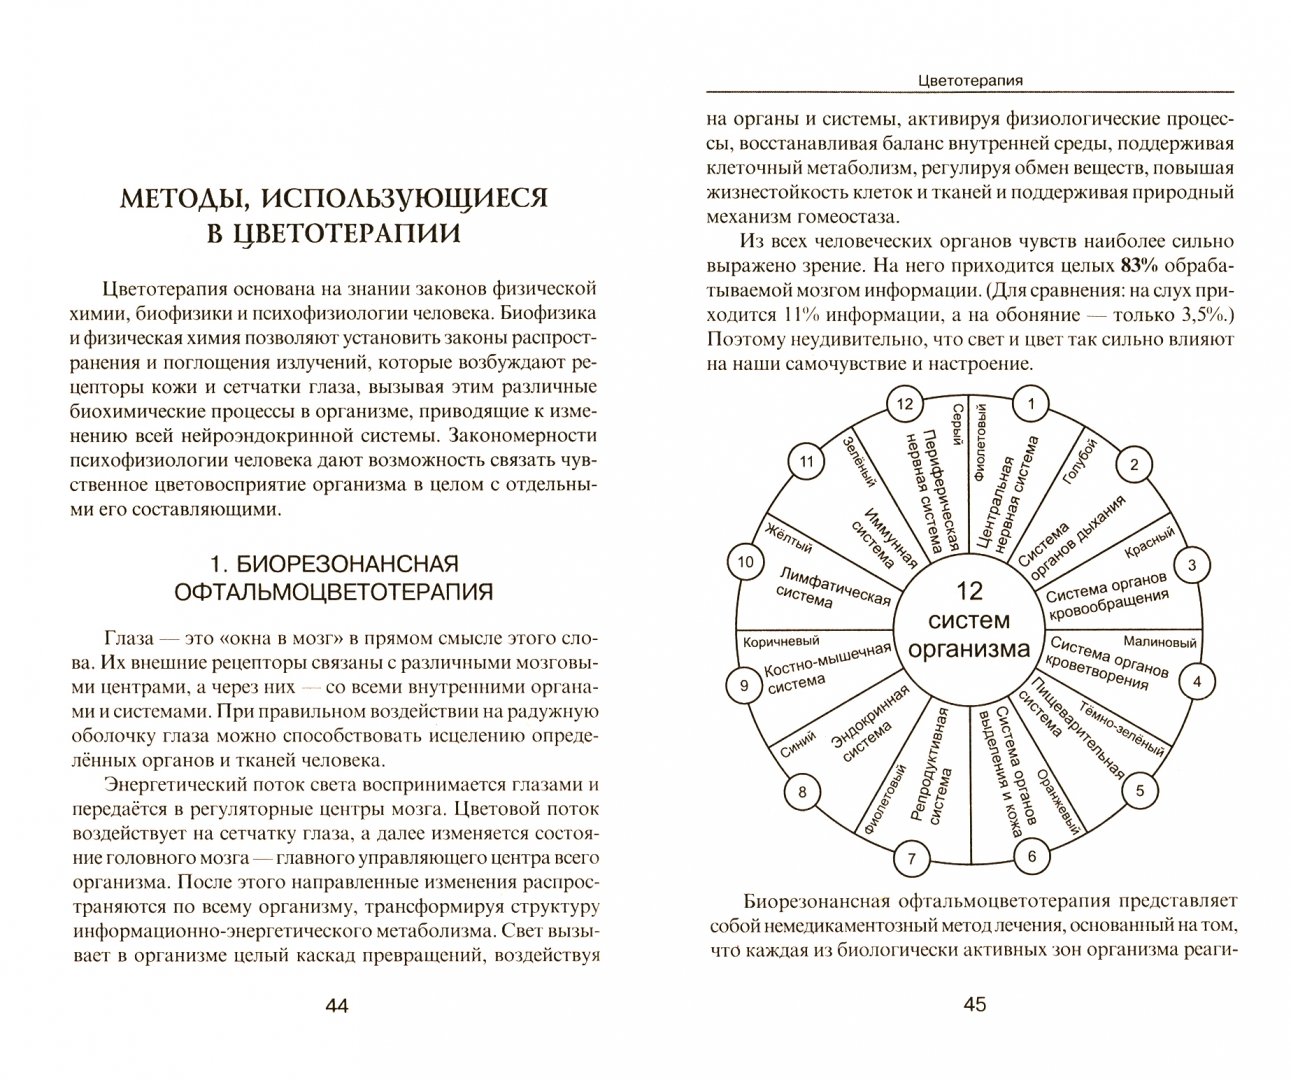 Иллюстрация 1 из 6 для Цветотерапия - Викторио Балбиани | Лабиринт - книги. Источник: Лабиринт